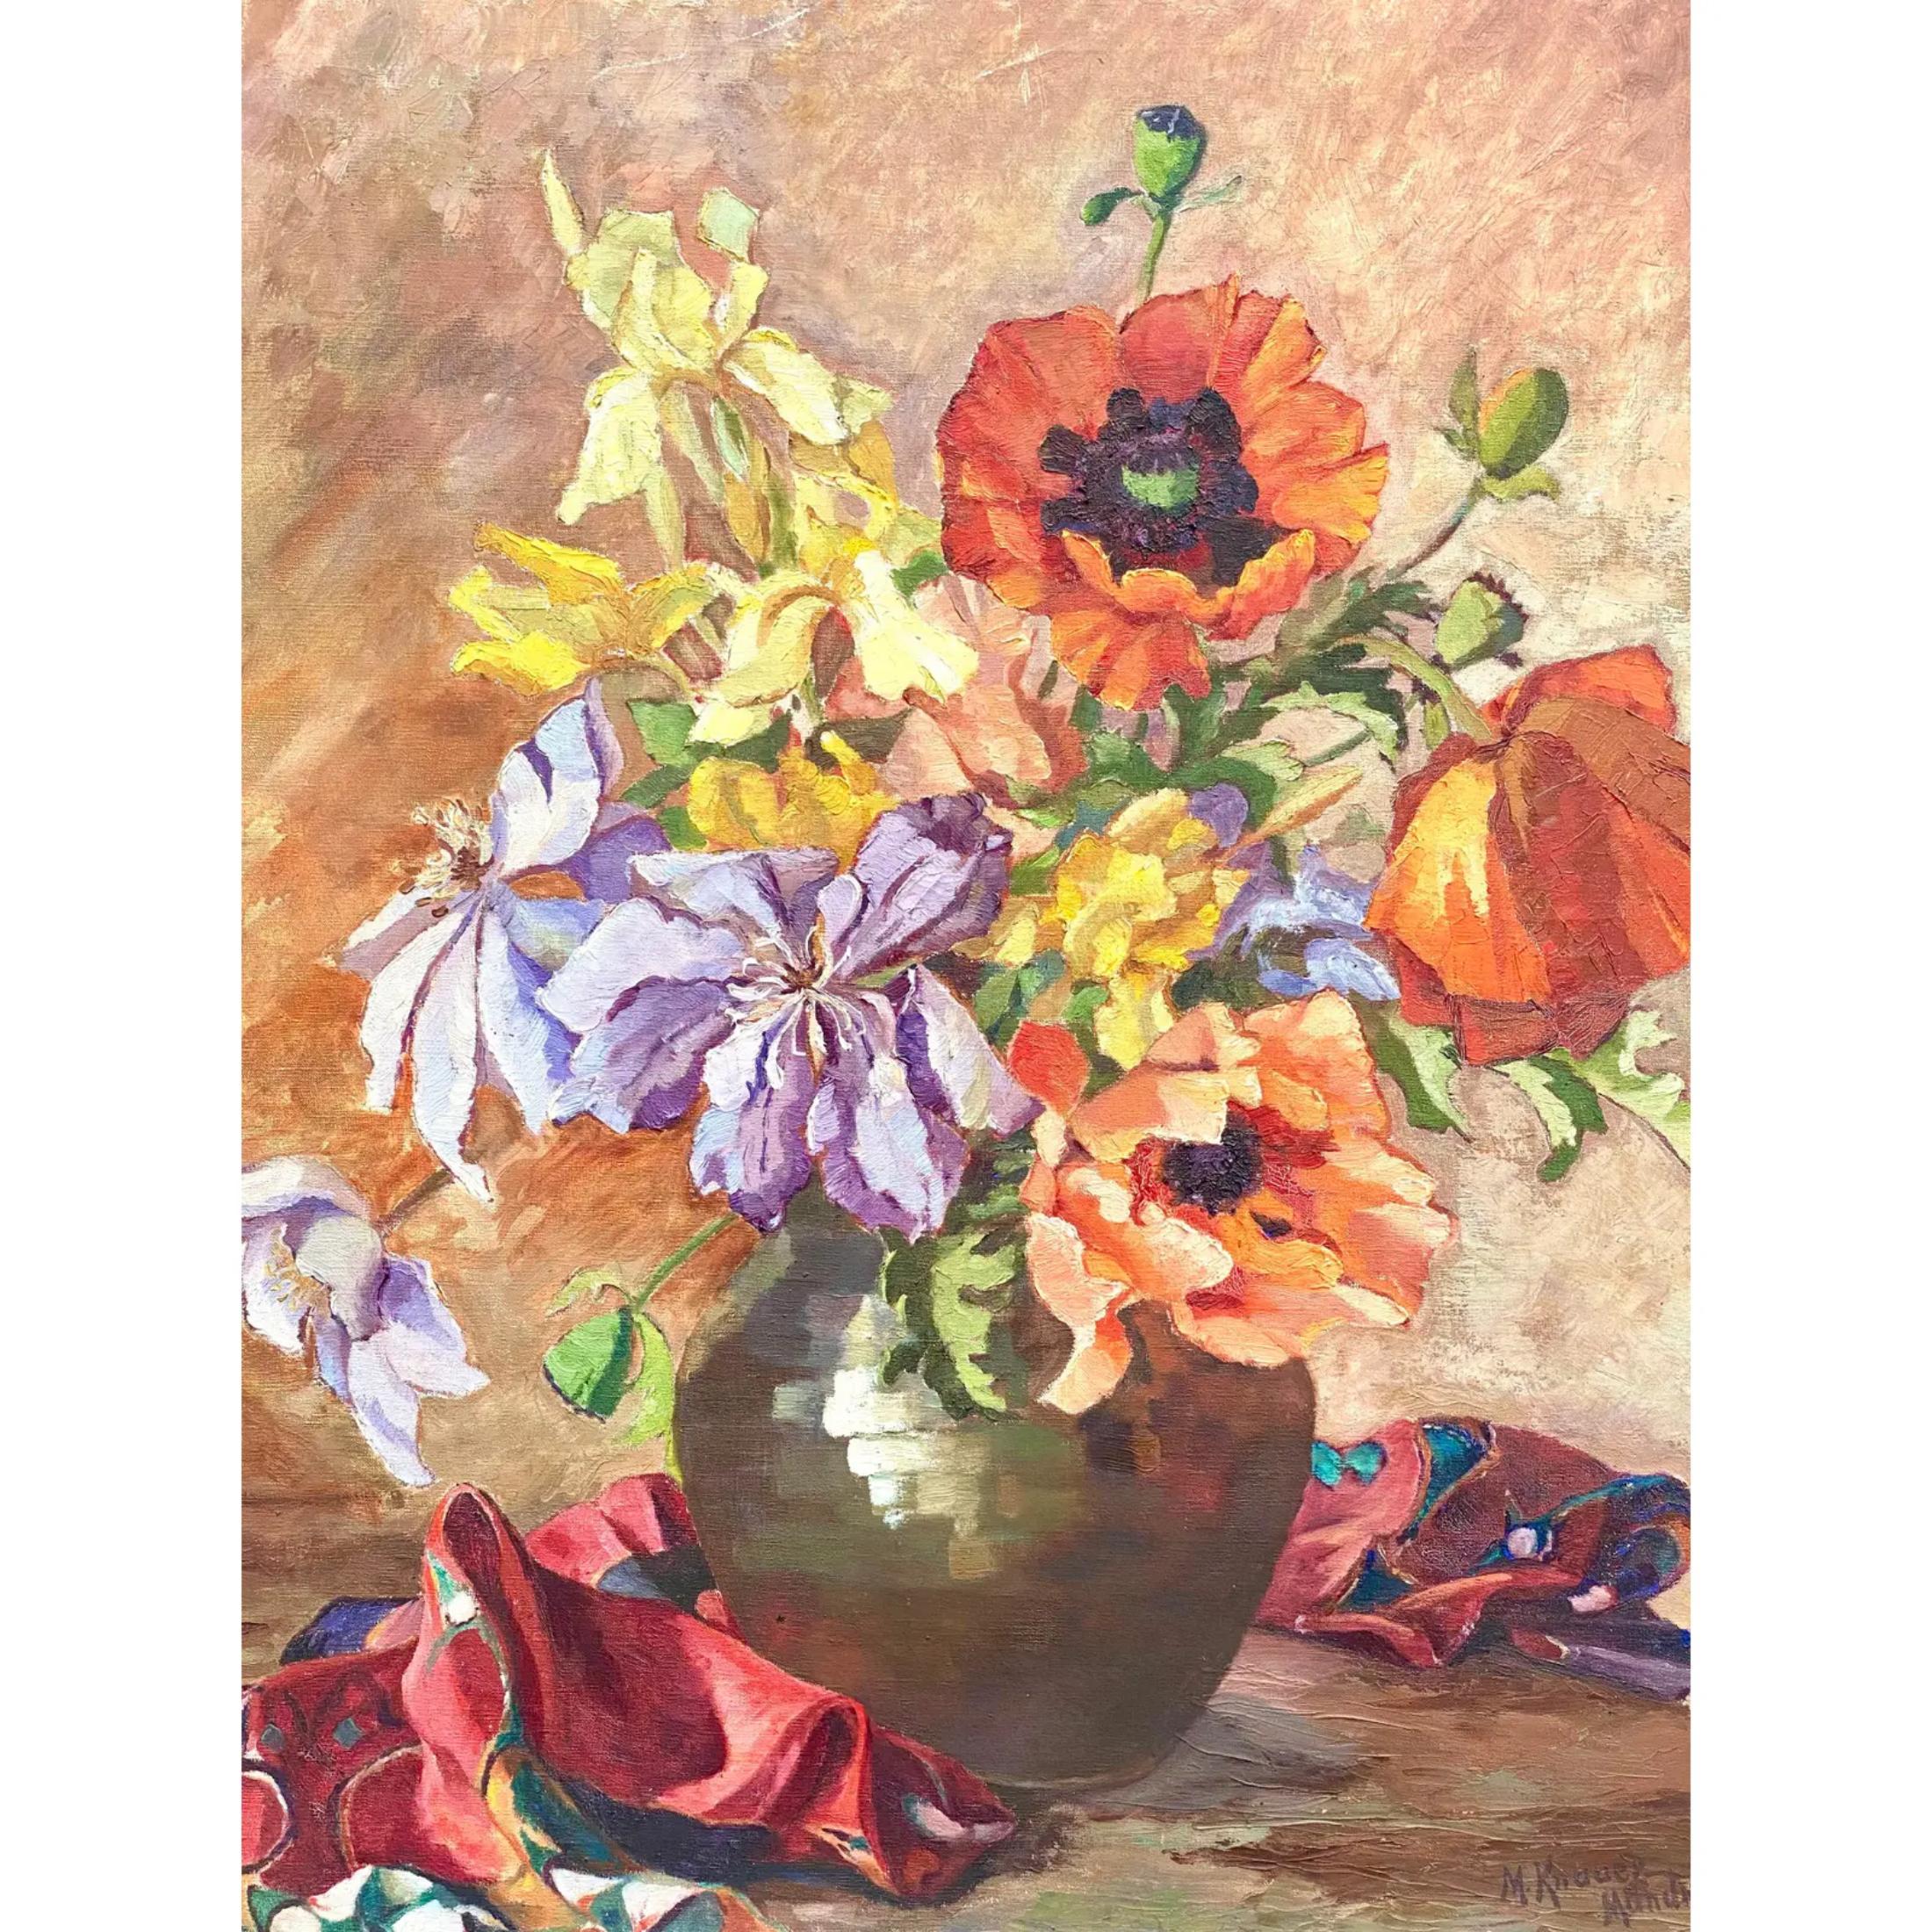 Wunderschönes florales Original-Ölgemälde im Vintage-Stil. Ein Schmuckstück aus der Mitte des Jahrhunderts in satten, kräftigen Farben. Vom Künstler signiert. Aus einem Nachlass in Palm Beach erworben.